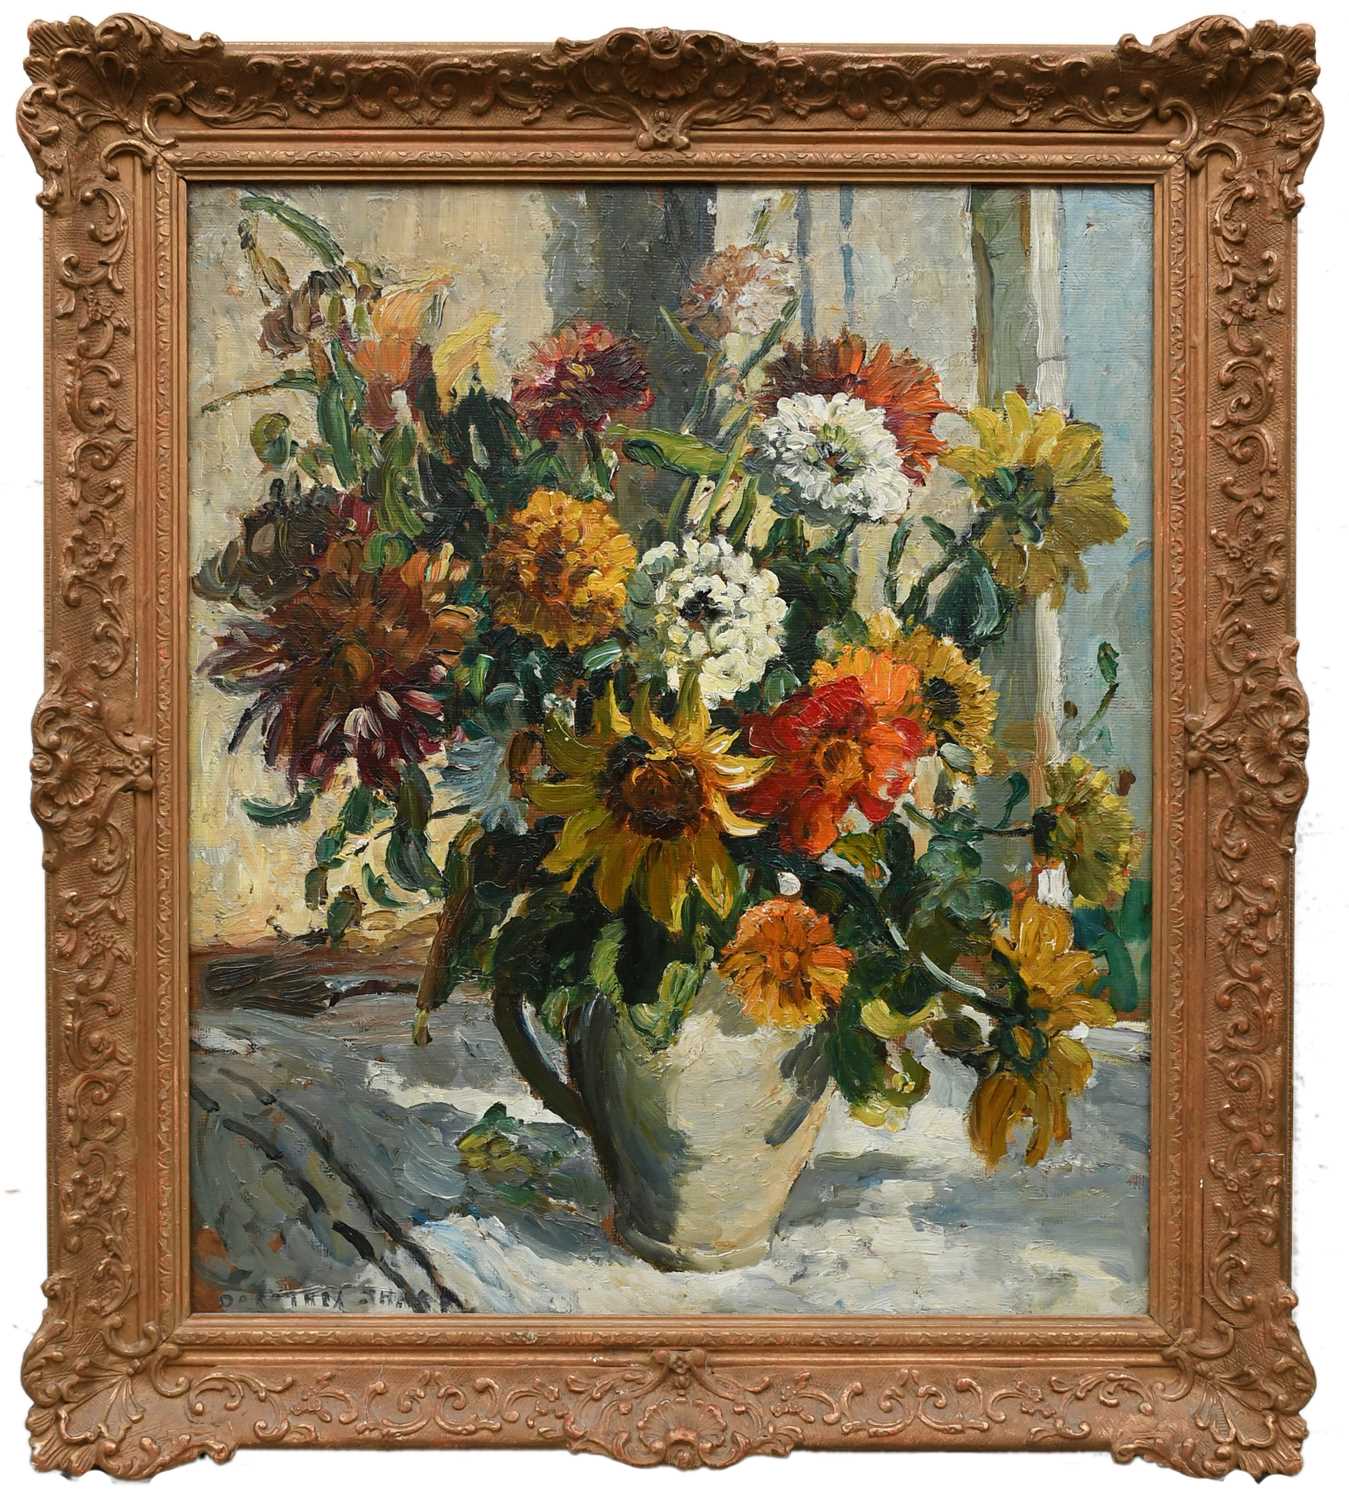 Φ Dorothea Sharp ROI, RBA (1874-1955) Still life with flowers in a jug Signed DOROTHEA SHARP ( - Image 2 of 4